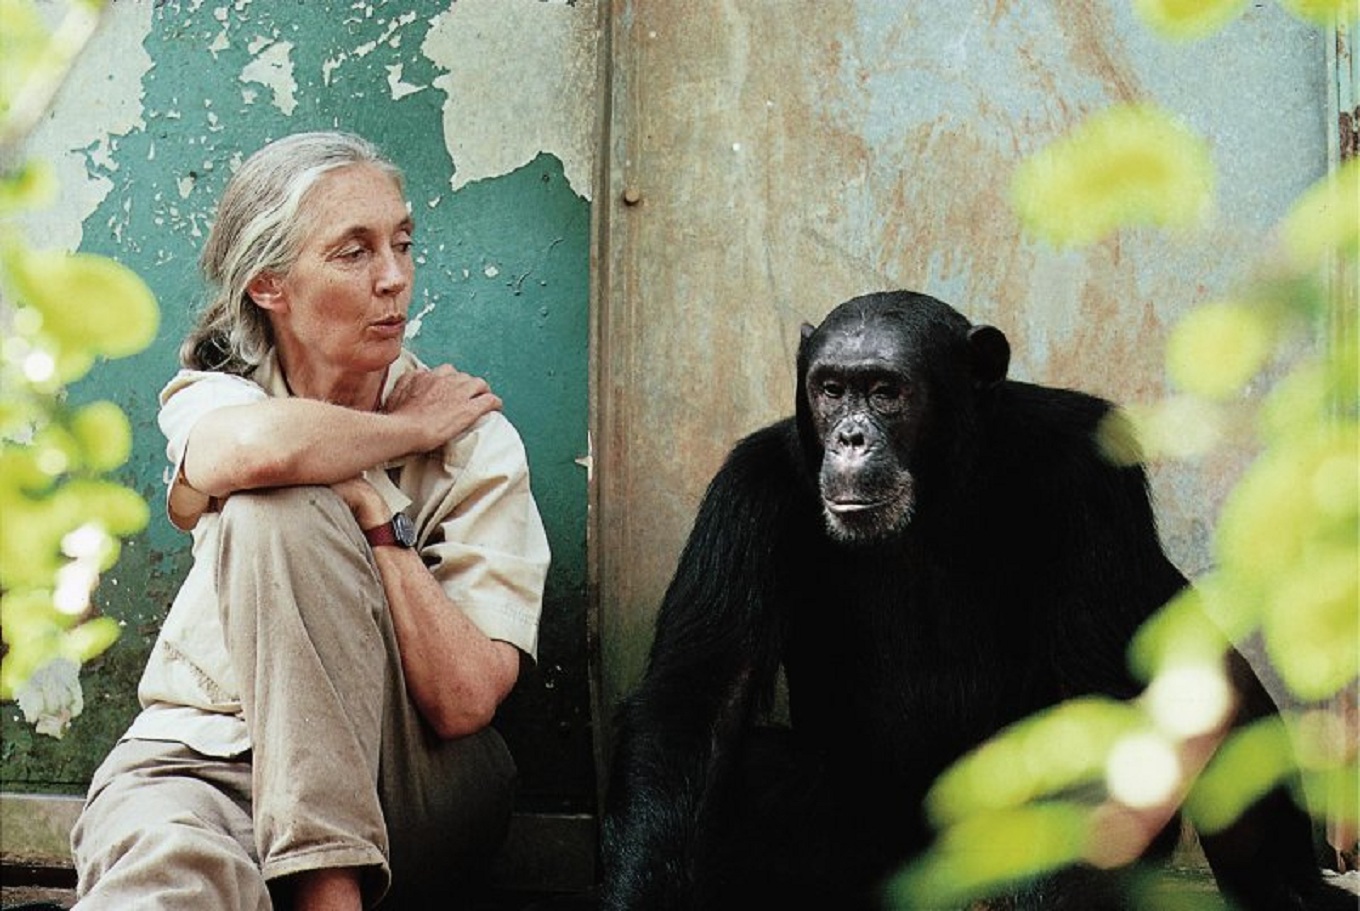 La investigadora y activista Jane Goodall acompañada de Freud, uno de los chimpancés con los que realizó sus investigaciones sobre la comunicación en primates, en el Parque Nacional de Gombe Stream. Imagen: Michael Neugebauer.